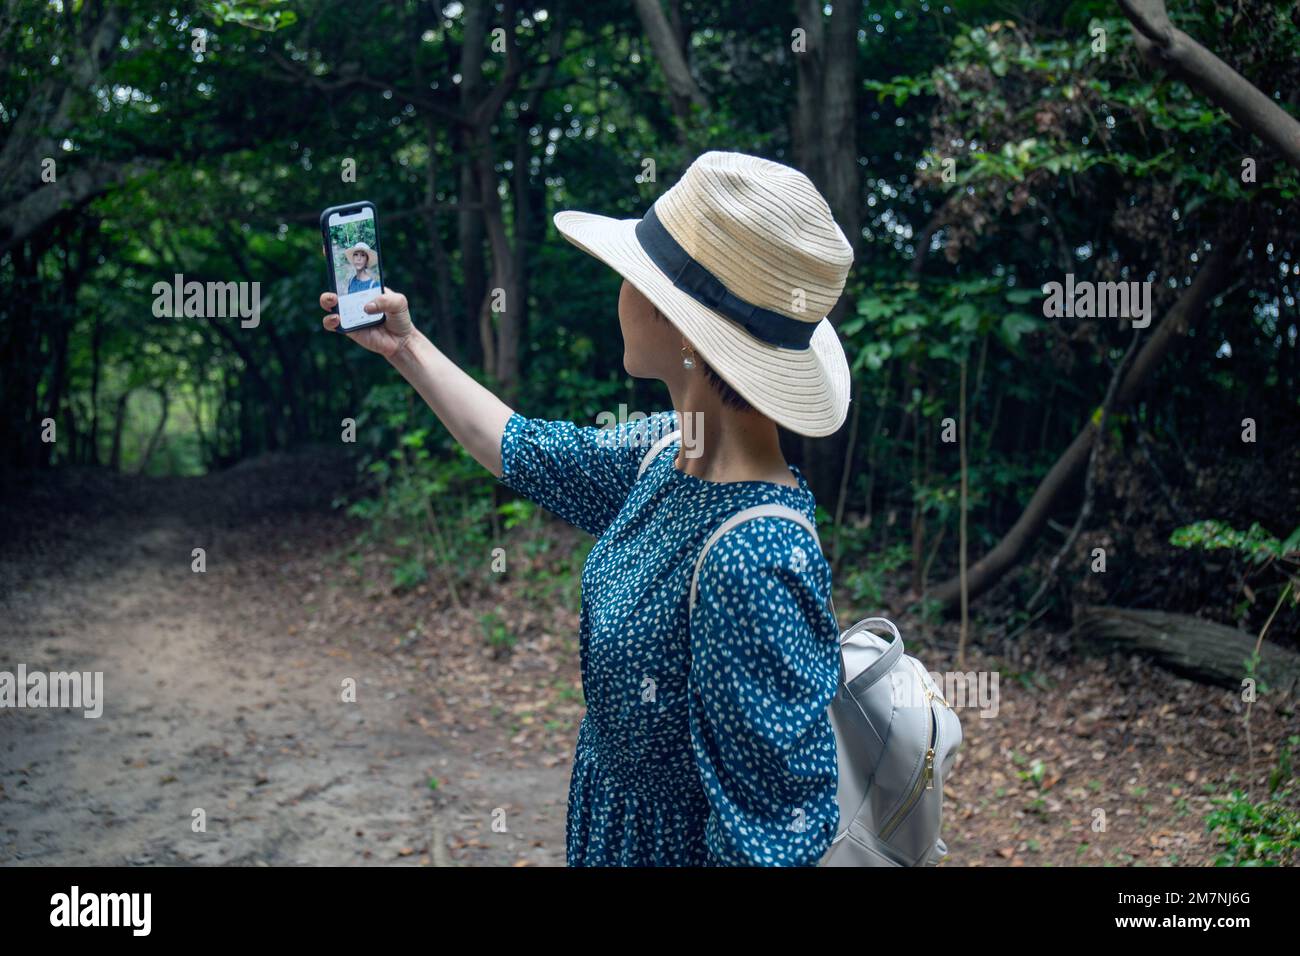 Una mujer japonesa madura en un sombrero de paja y un vestido azul tomando un selfie con un teléfono móvil. Foto de stock